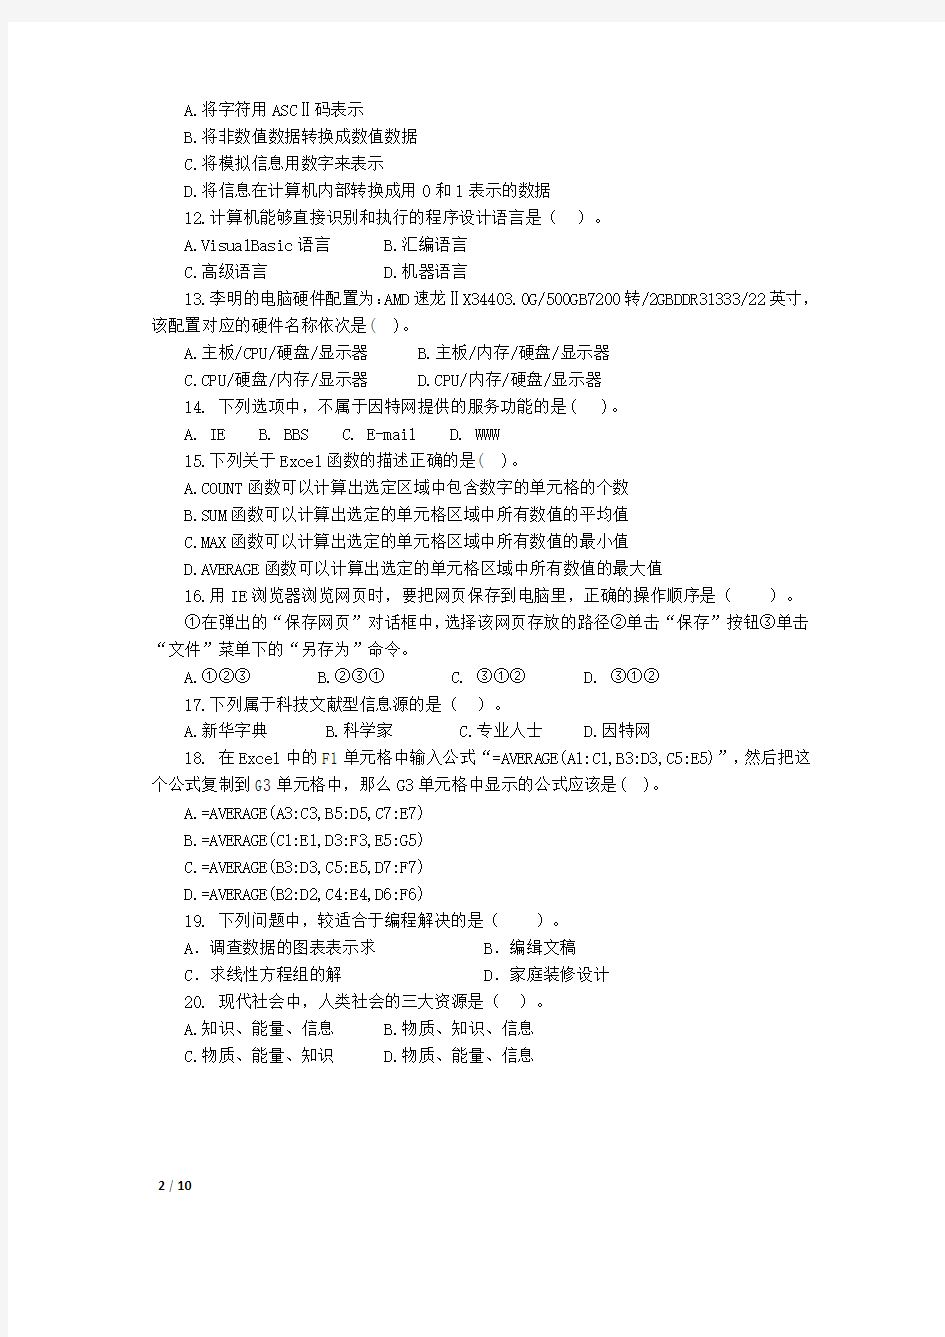 2012年辽宁省普通高中学生学业水平考试(测试卷)信息技术考试前测卷及参考答案